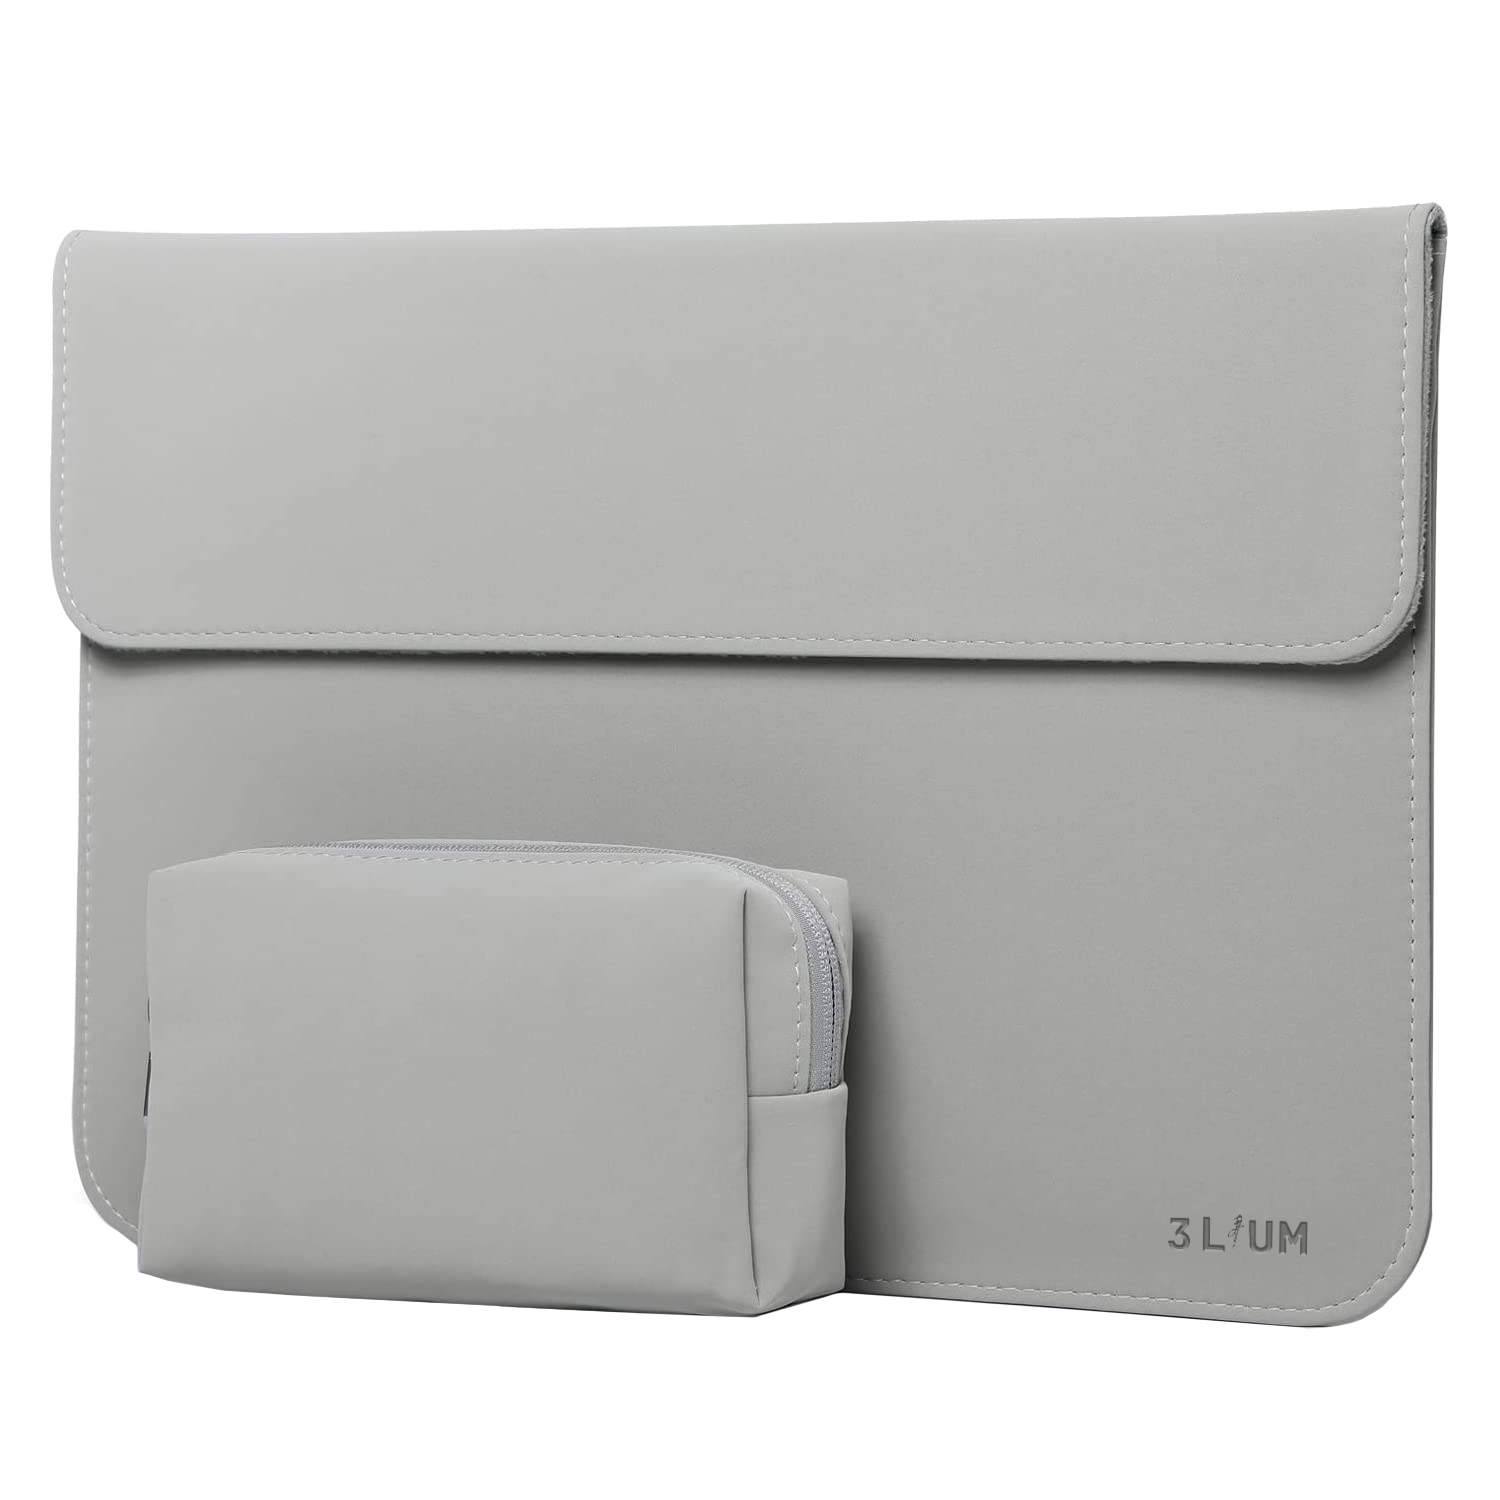 کاور لپ تاپ تری لیوم مدل Point مناسب برای لپ تاپ 13 اینچی به همراه کیف لوازم جانبی